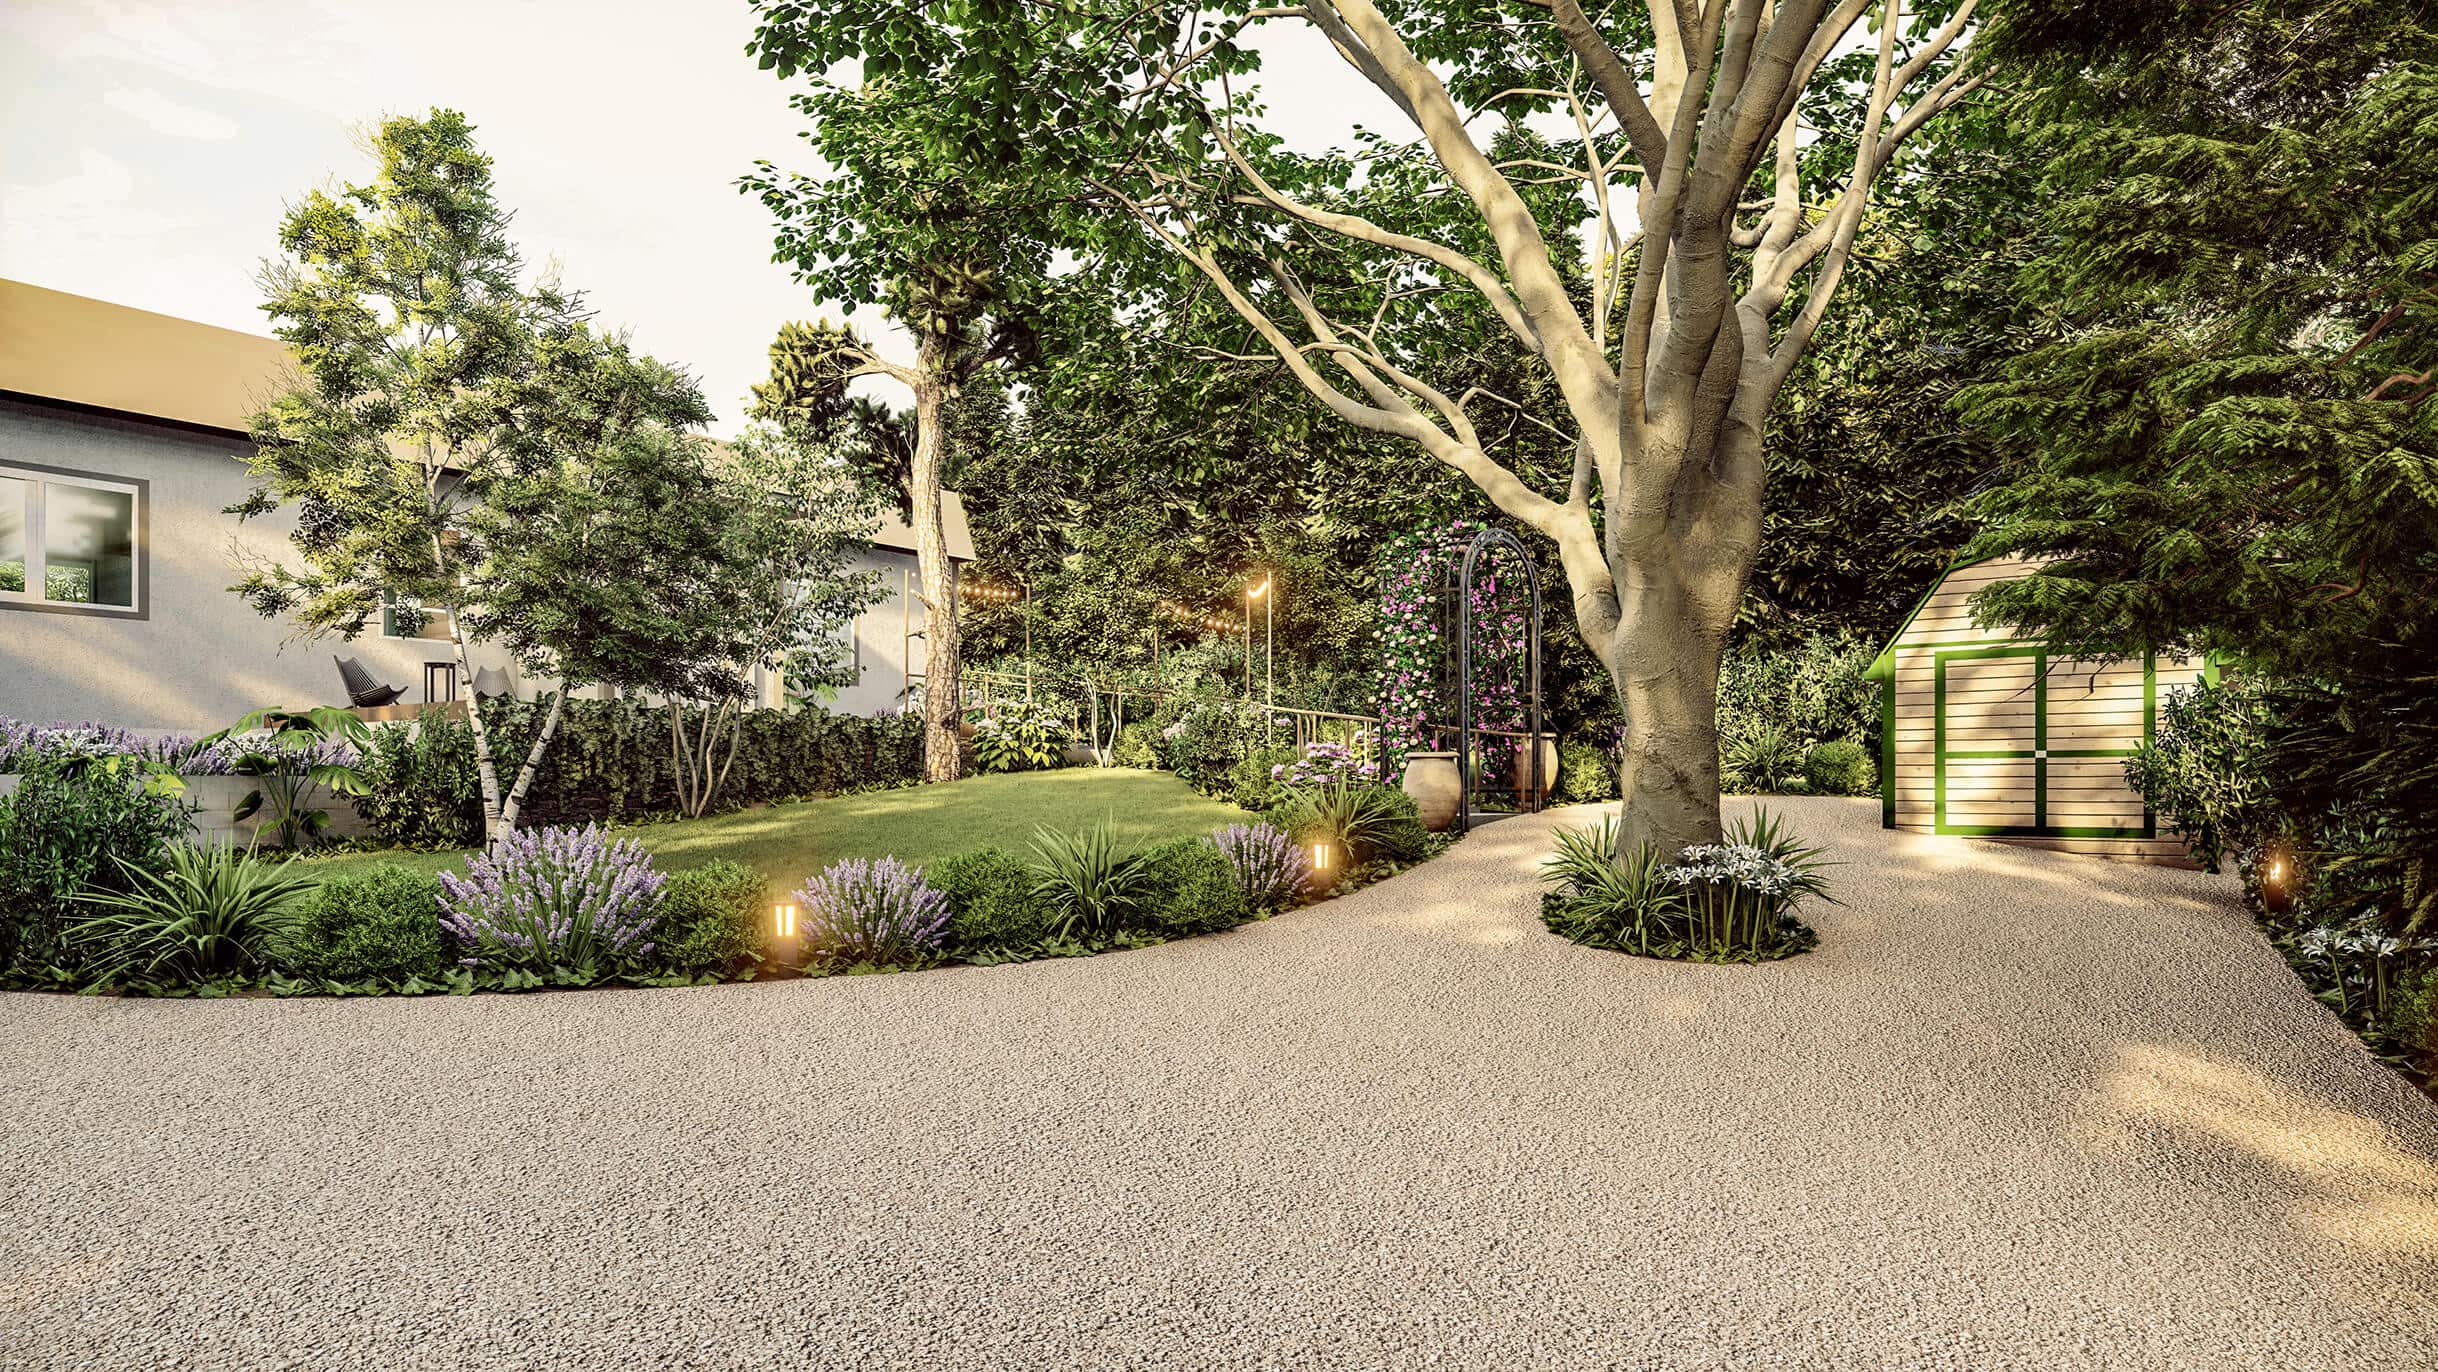 Homelydesign-front-view-residential-garden-scene